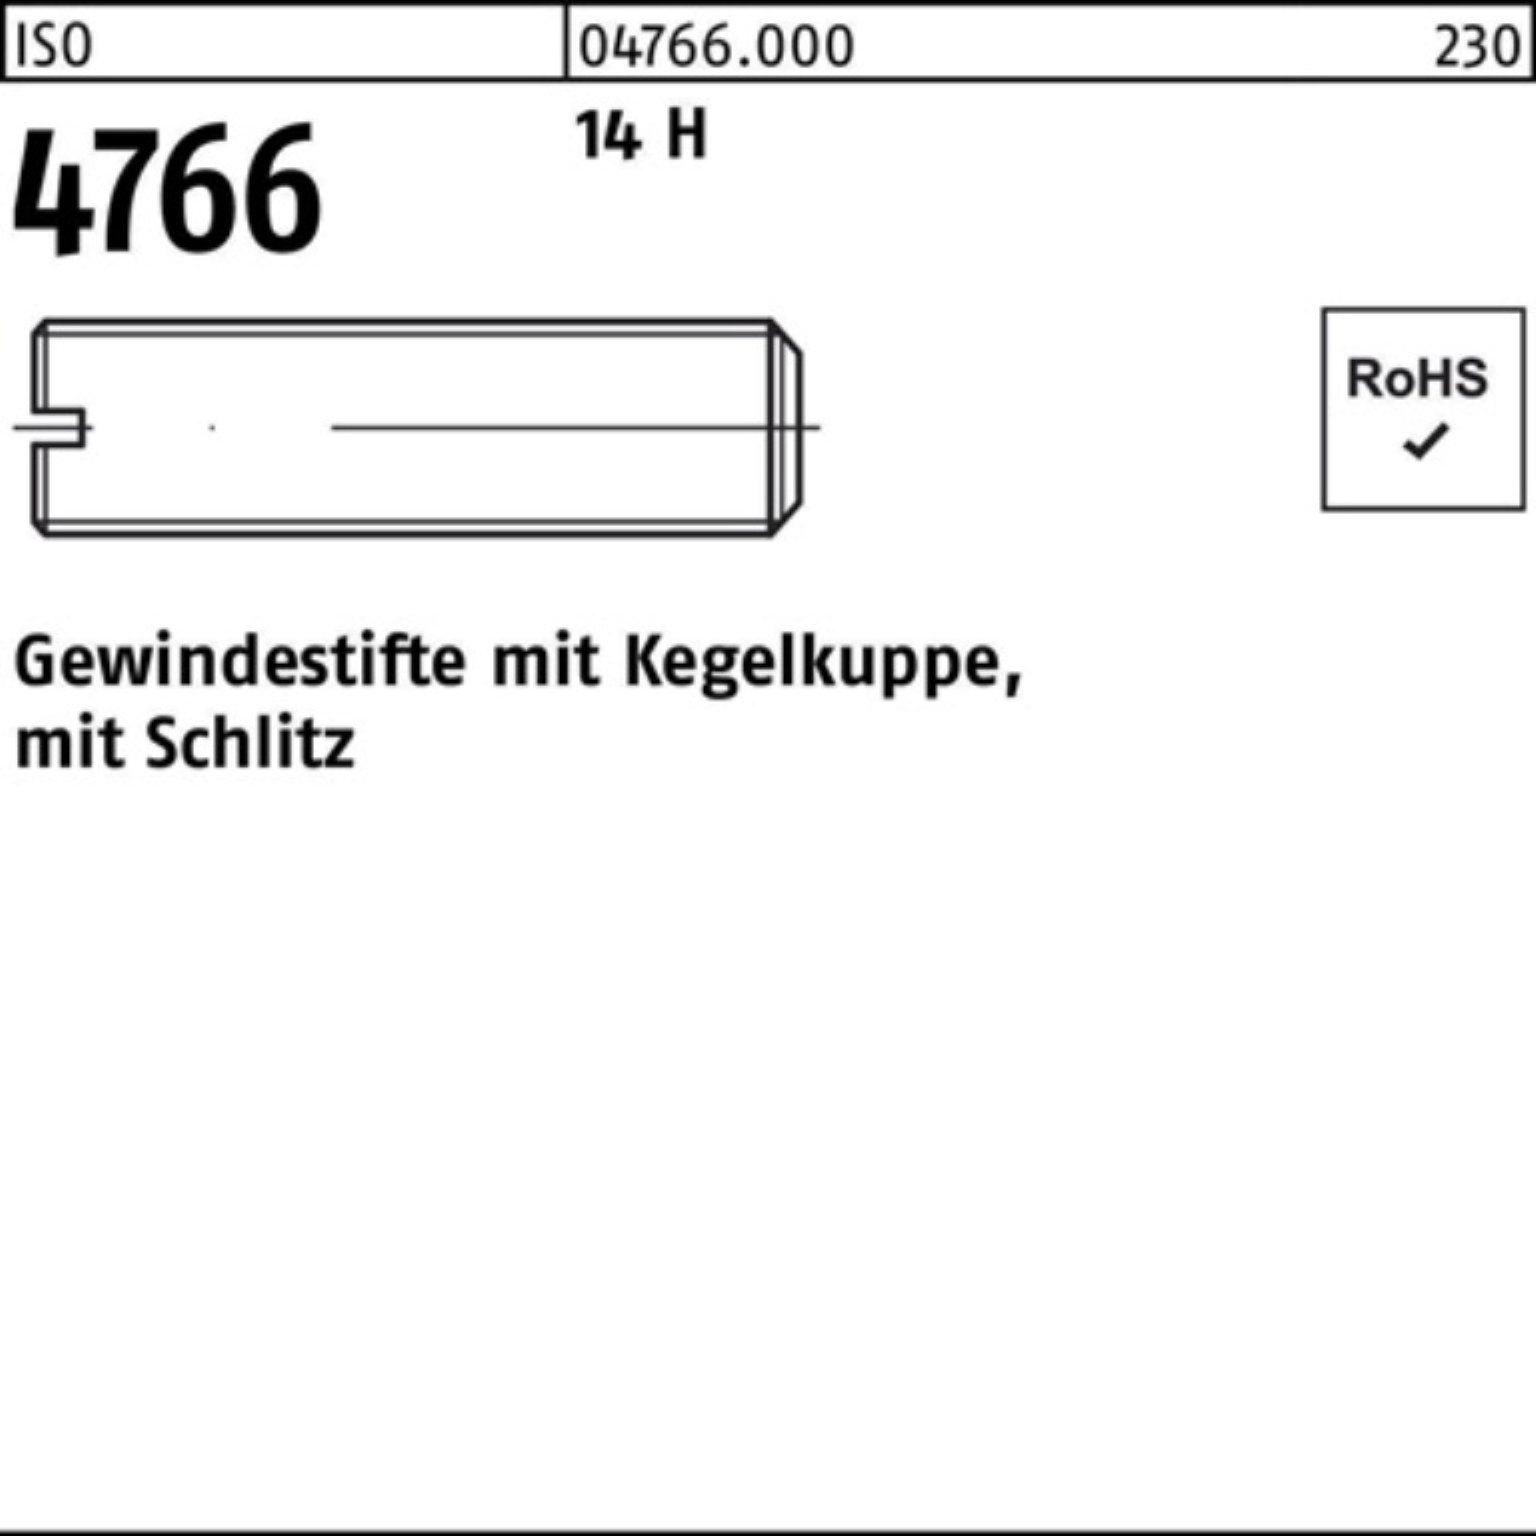 Kegelkuppe/Schlitz Gewindestift 100 14 H St 8 Reyher Pack 4766 Gewindebolzen ISO 100er M10x